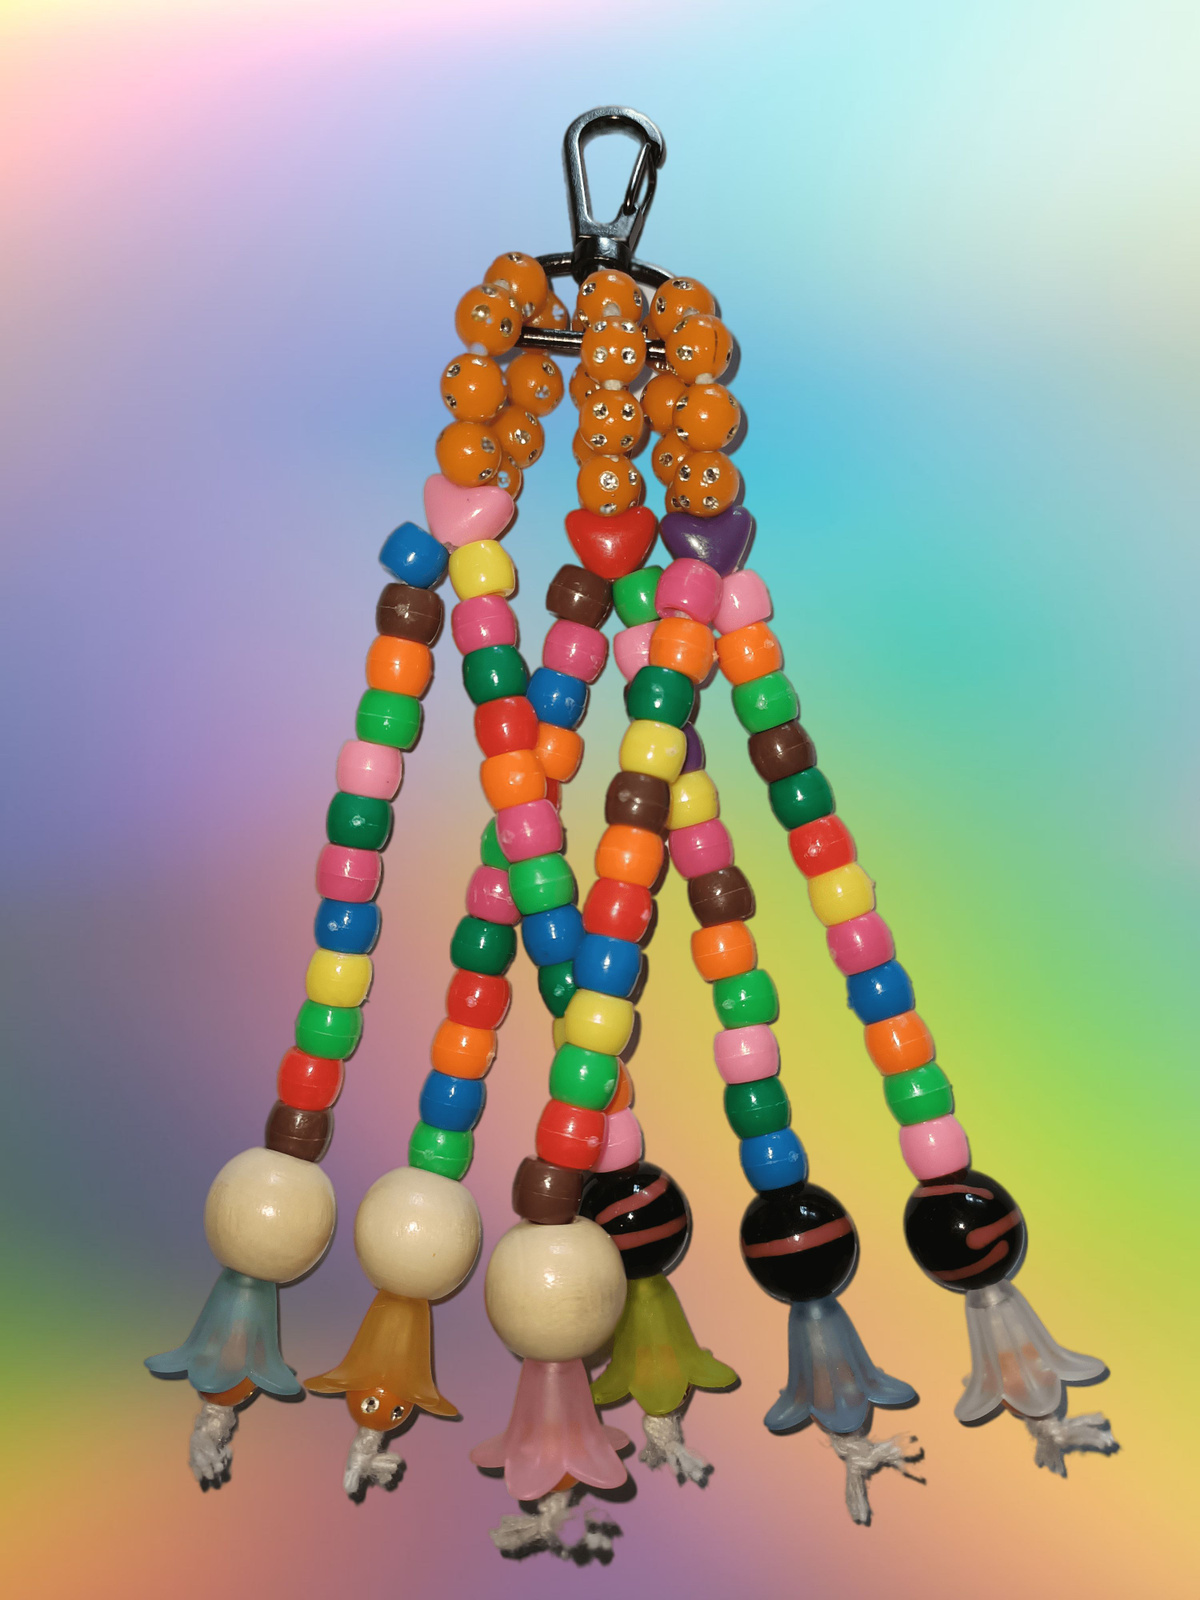 Познавательные и разнообразные игрушки для попугаев: деревянные развивающие элементы, бусины, колокольчики, шарики и кольца. Игрушки, специально созданные для попугаев, помогут развить их интеллект, укрепить мышцы и развлечь их в клетке. Игрушки изготовлены из безопасных материалов, чтобы обеспечить комфорт и безопасность Вашего попугая. Подарите своему питомцу увлекательные игрушки, которые позволят ему проявить свою игривость и активность!